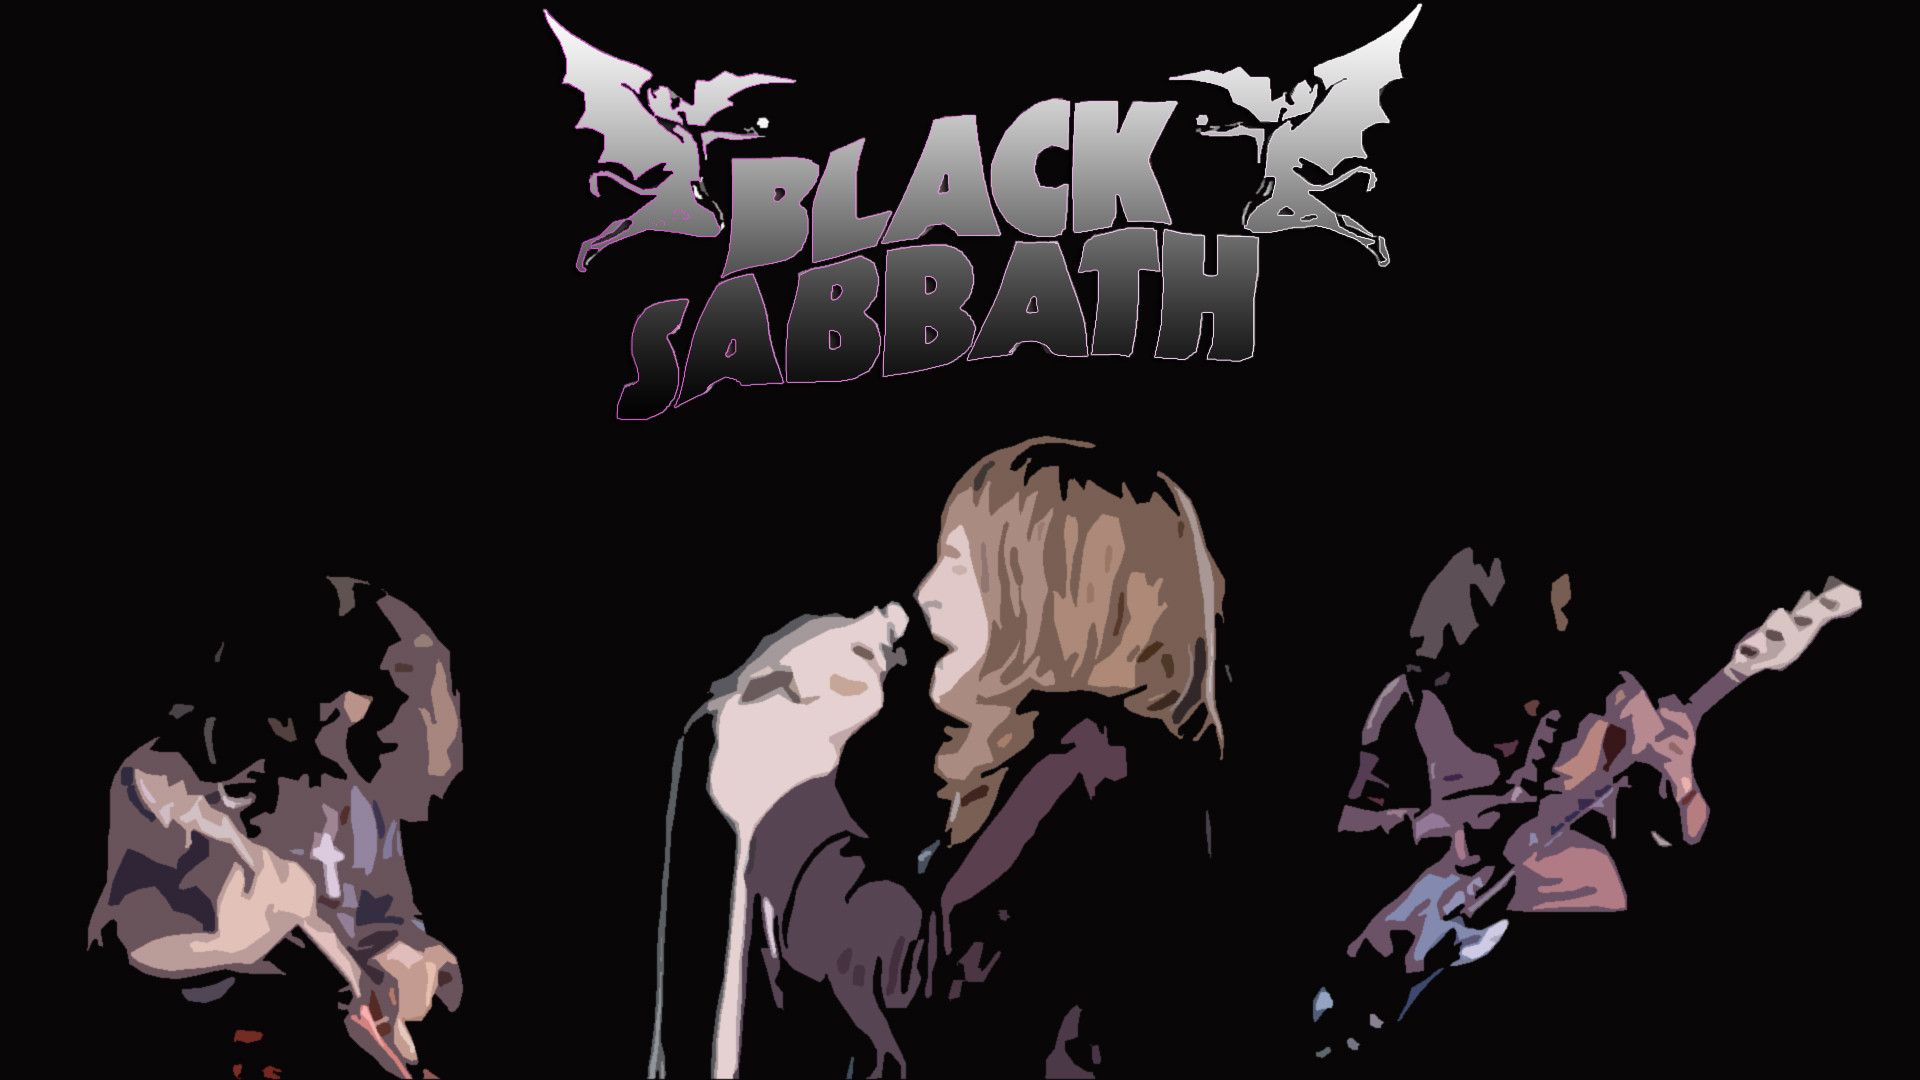 black sabbath logo tattoo